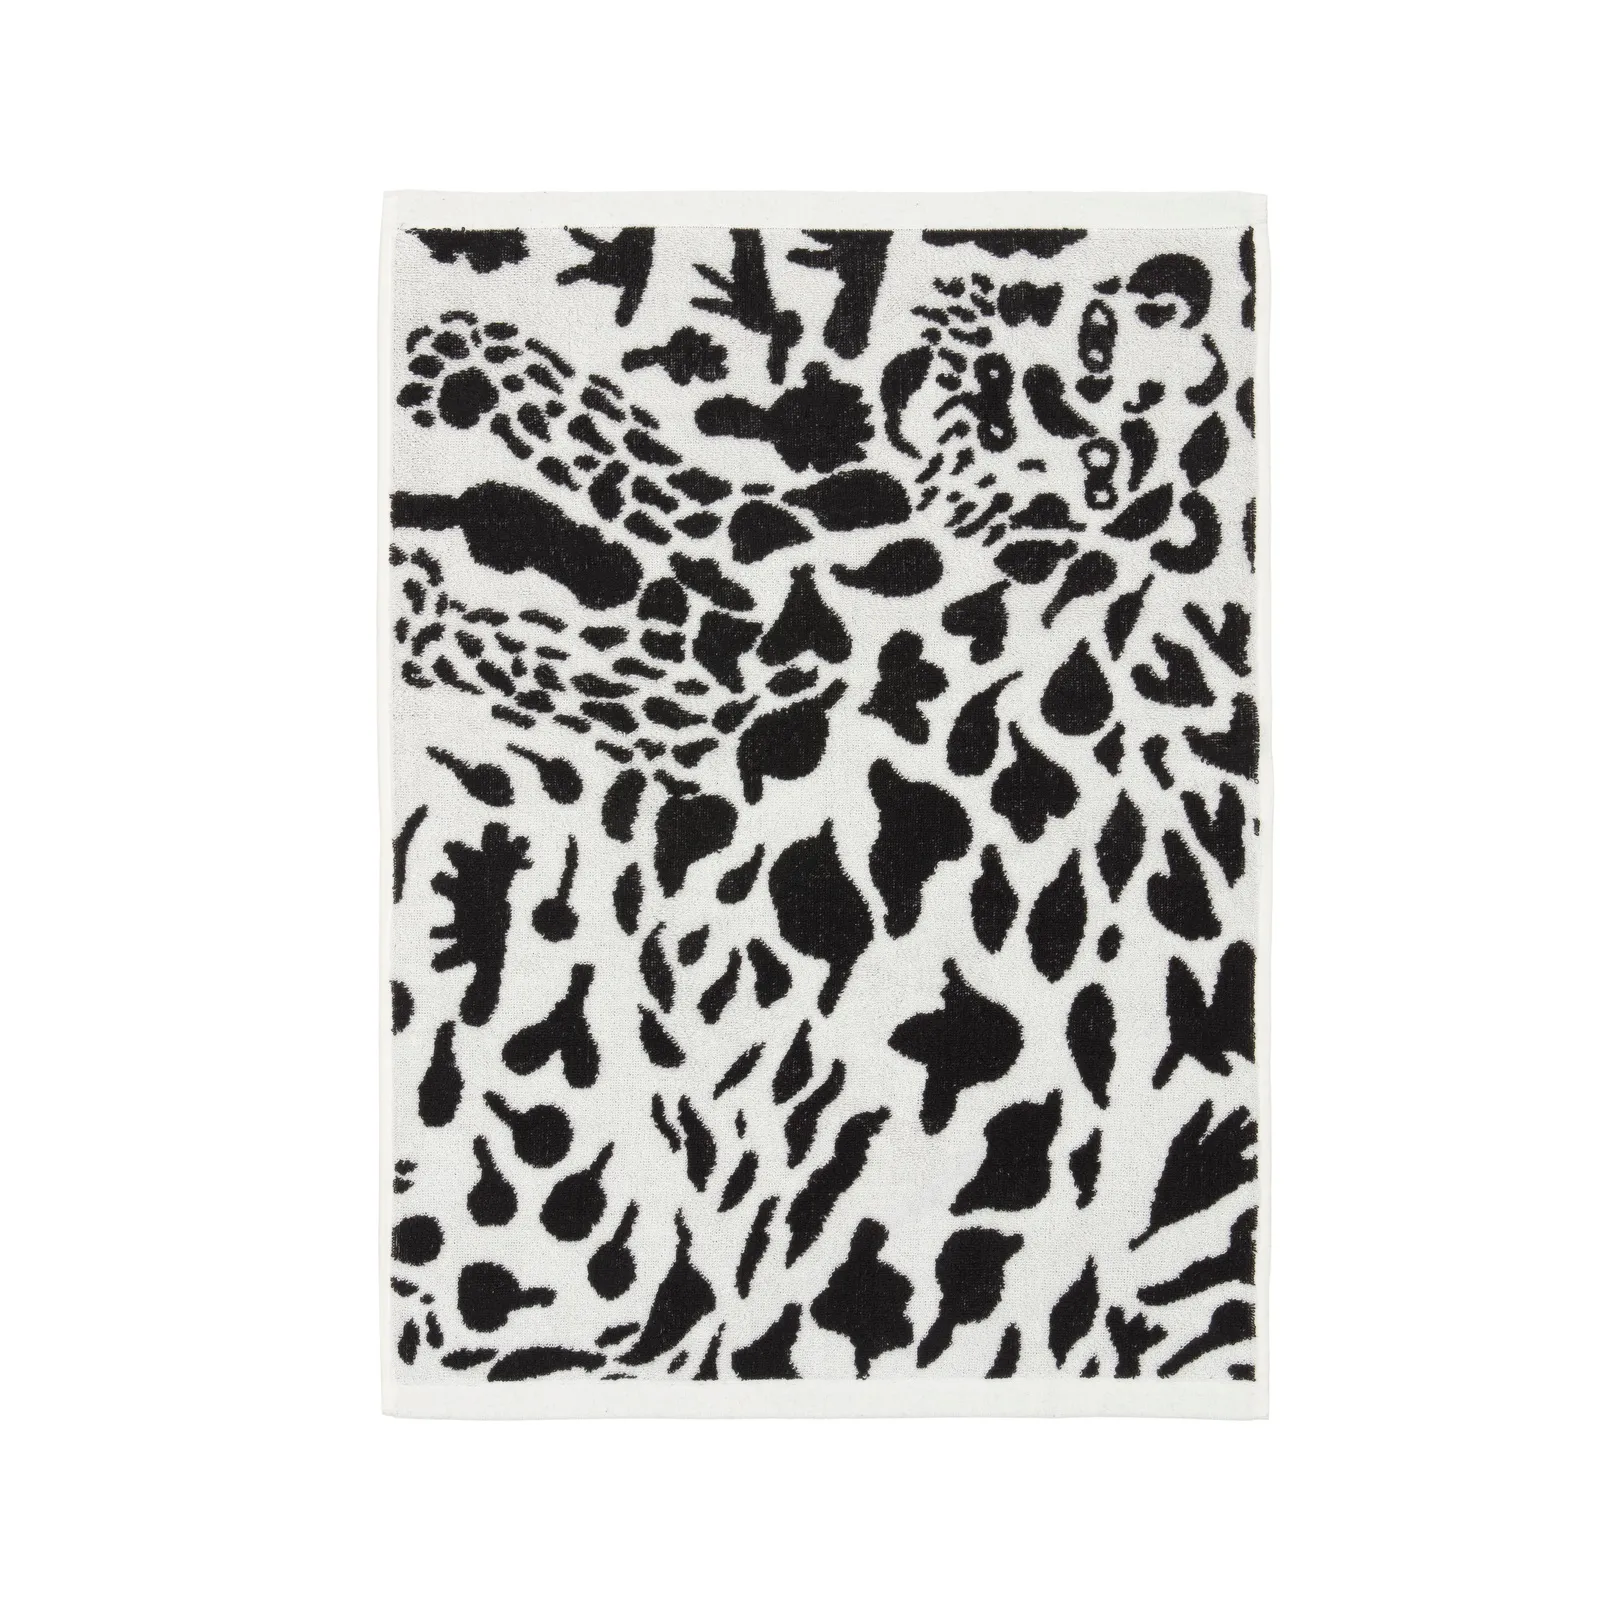 Asciugamano OTC 50x70cm Cheetah nero bianco